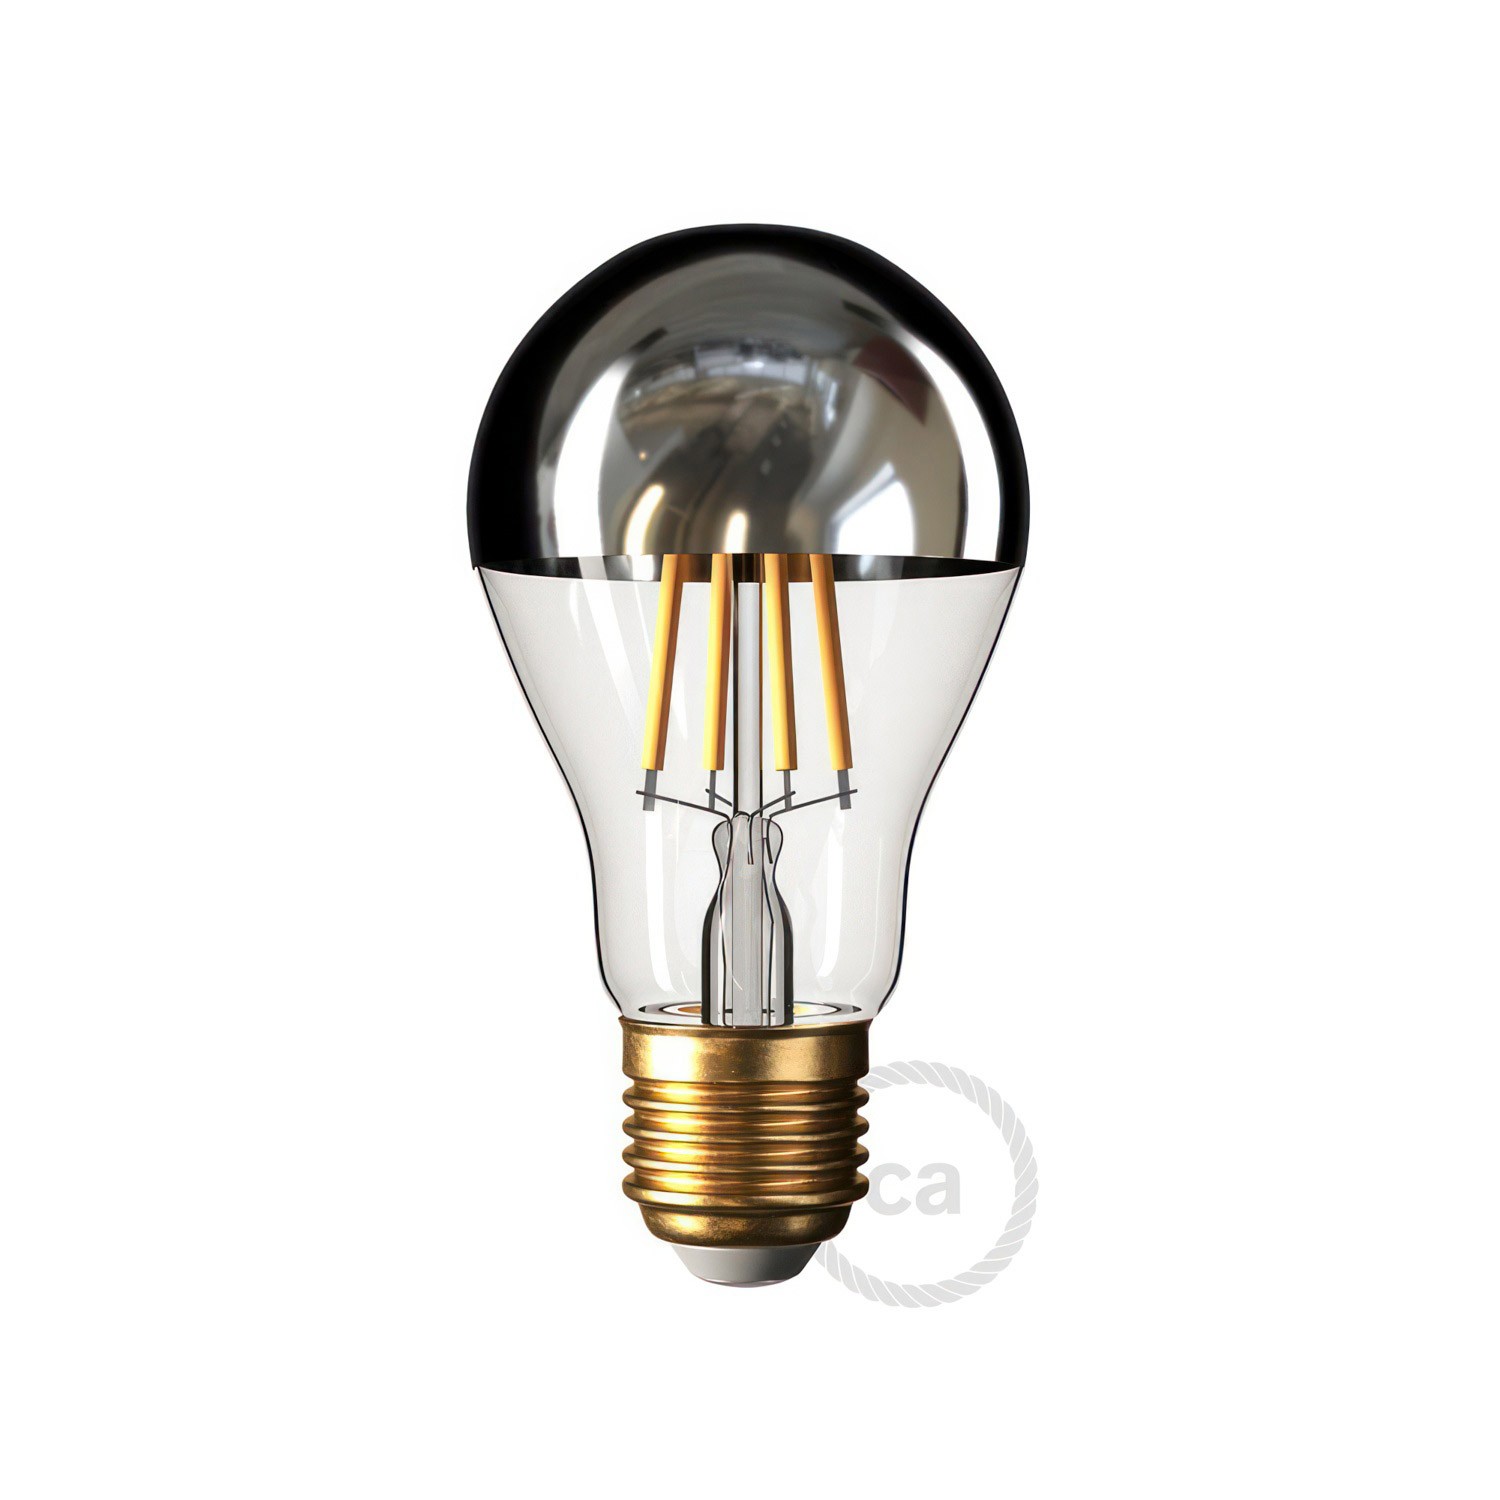 Flex 30 Lampa s Drop žaruljom